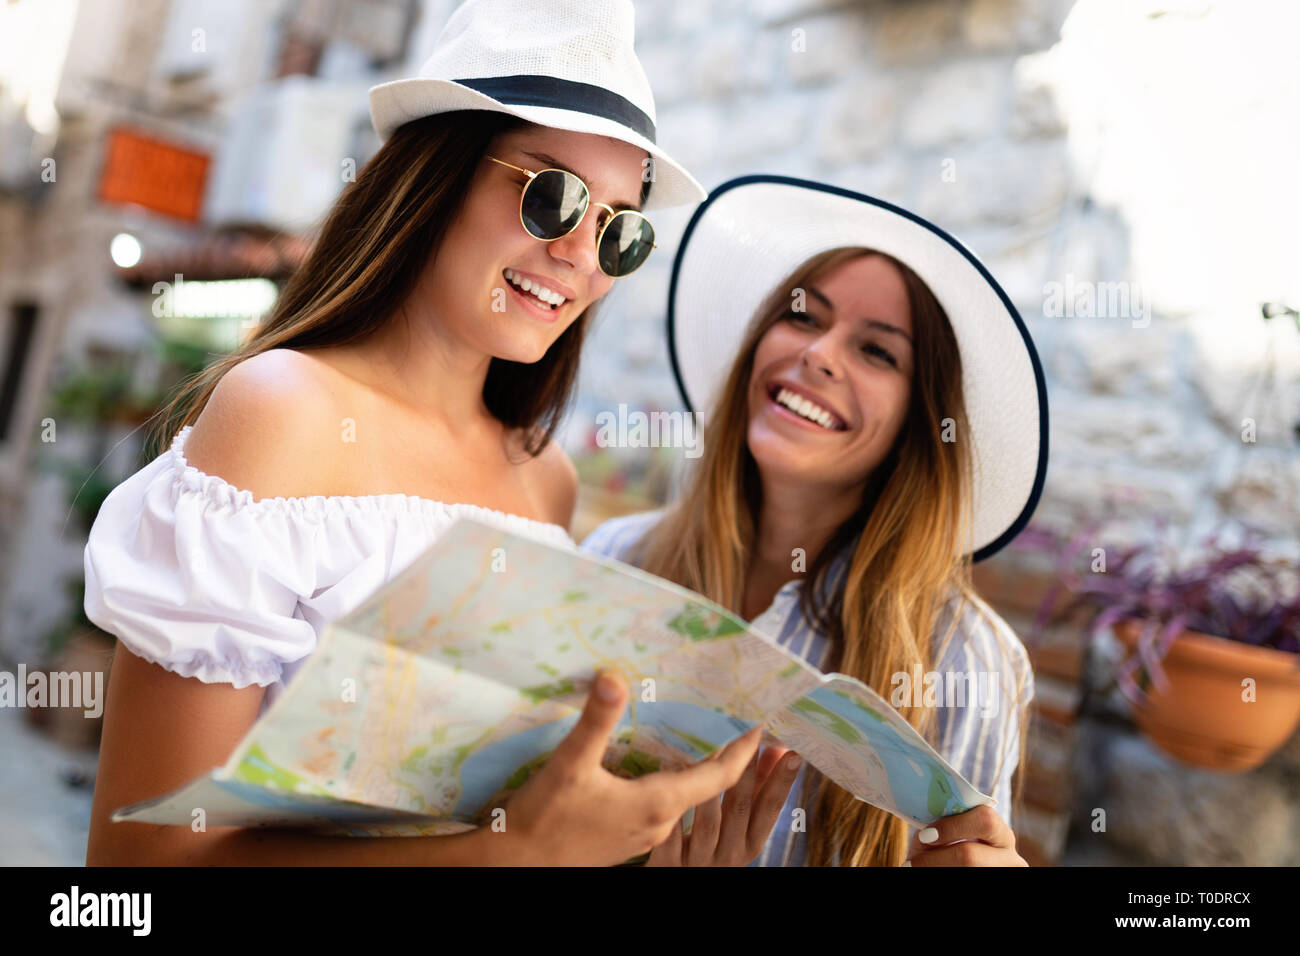 Junge glücklich Touristische reisende Frauen im Sommerurlaub. Reisen, Freunde, Sommer Konzept. Stockfoto